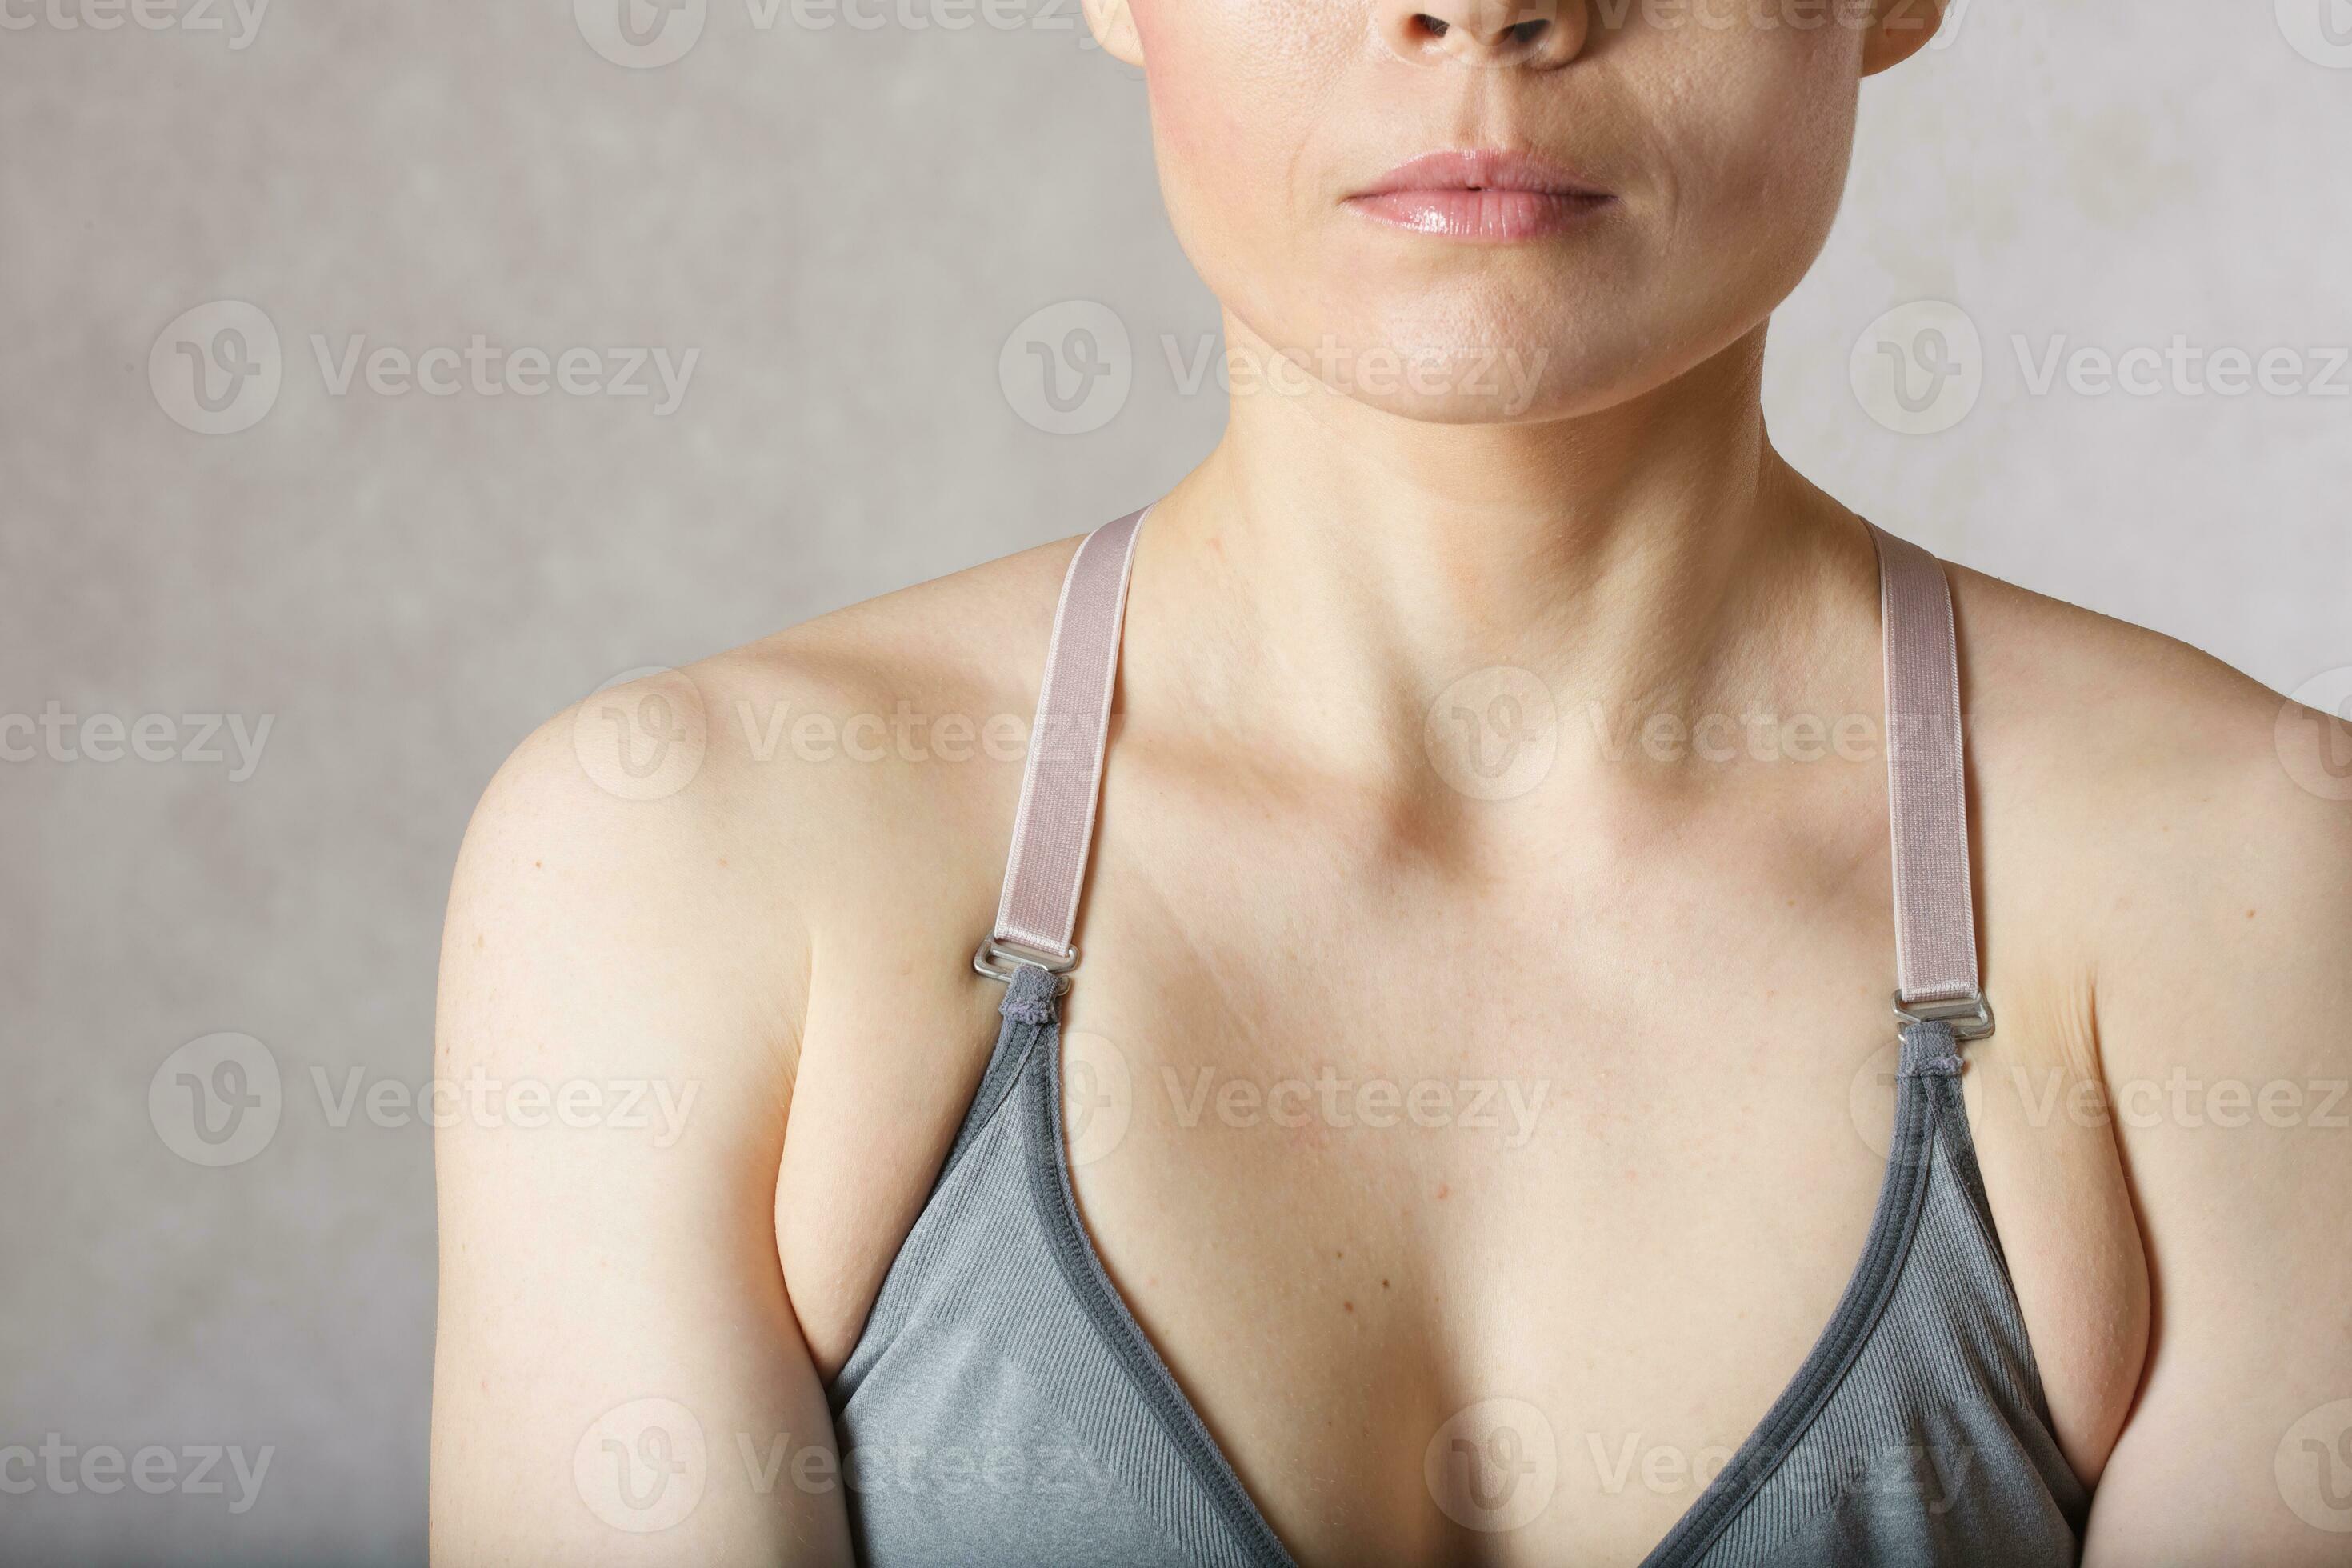 Underarm fat at young woman. Closeup 26170575 Stock Photo at Vecteezy